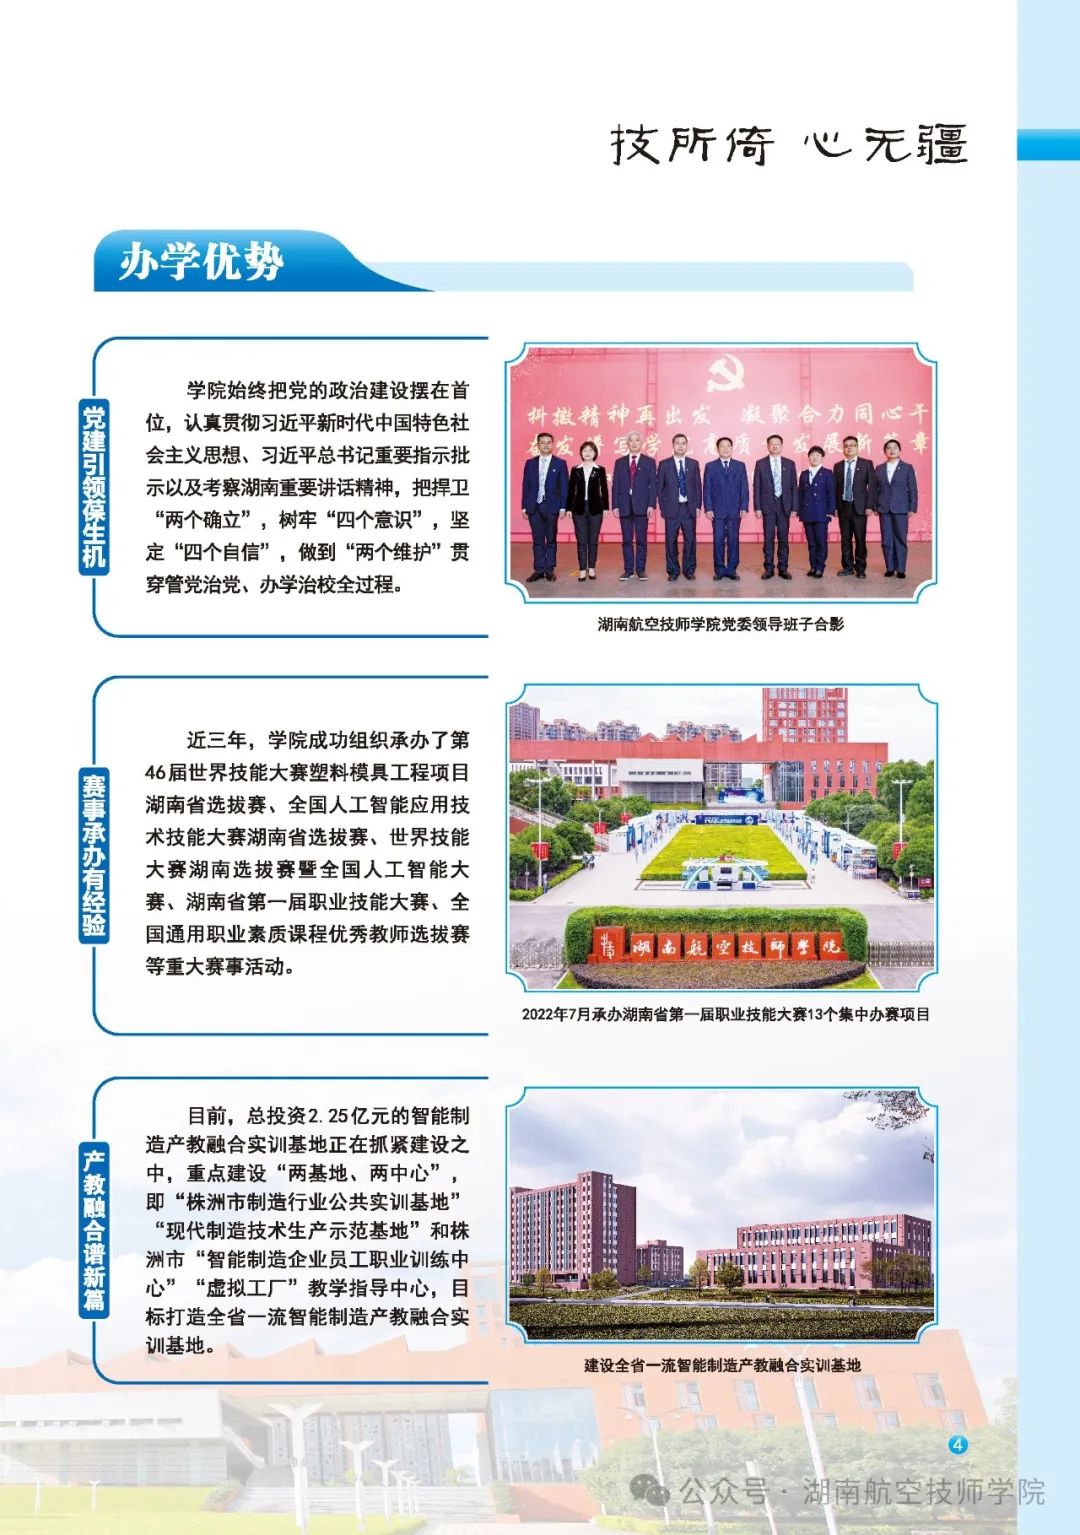 湖南航空技师学院2024年招生简章